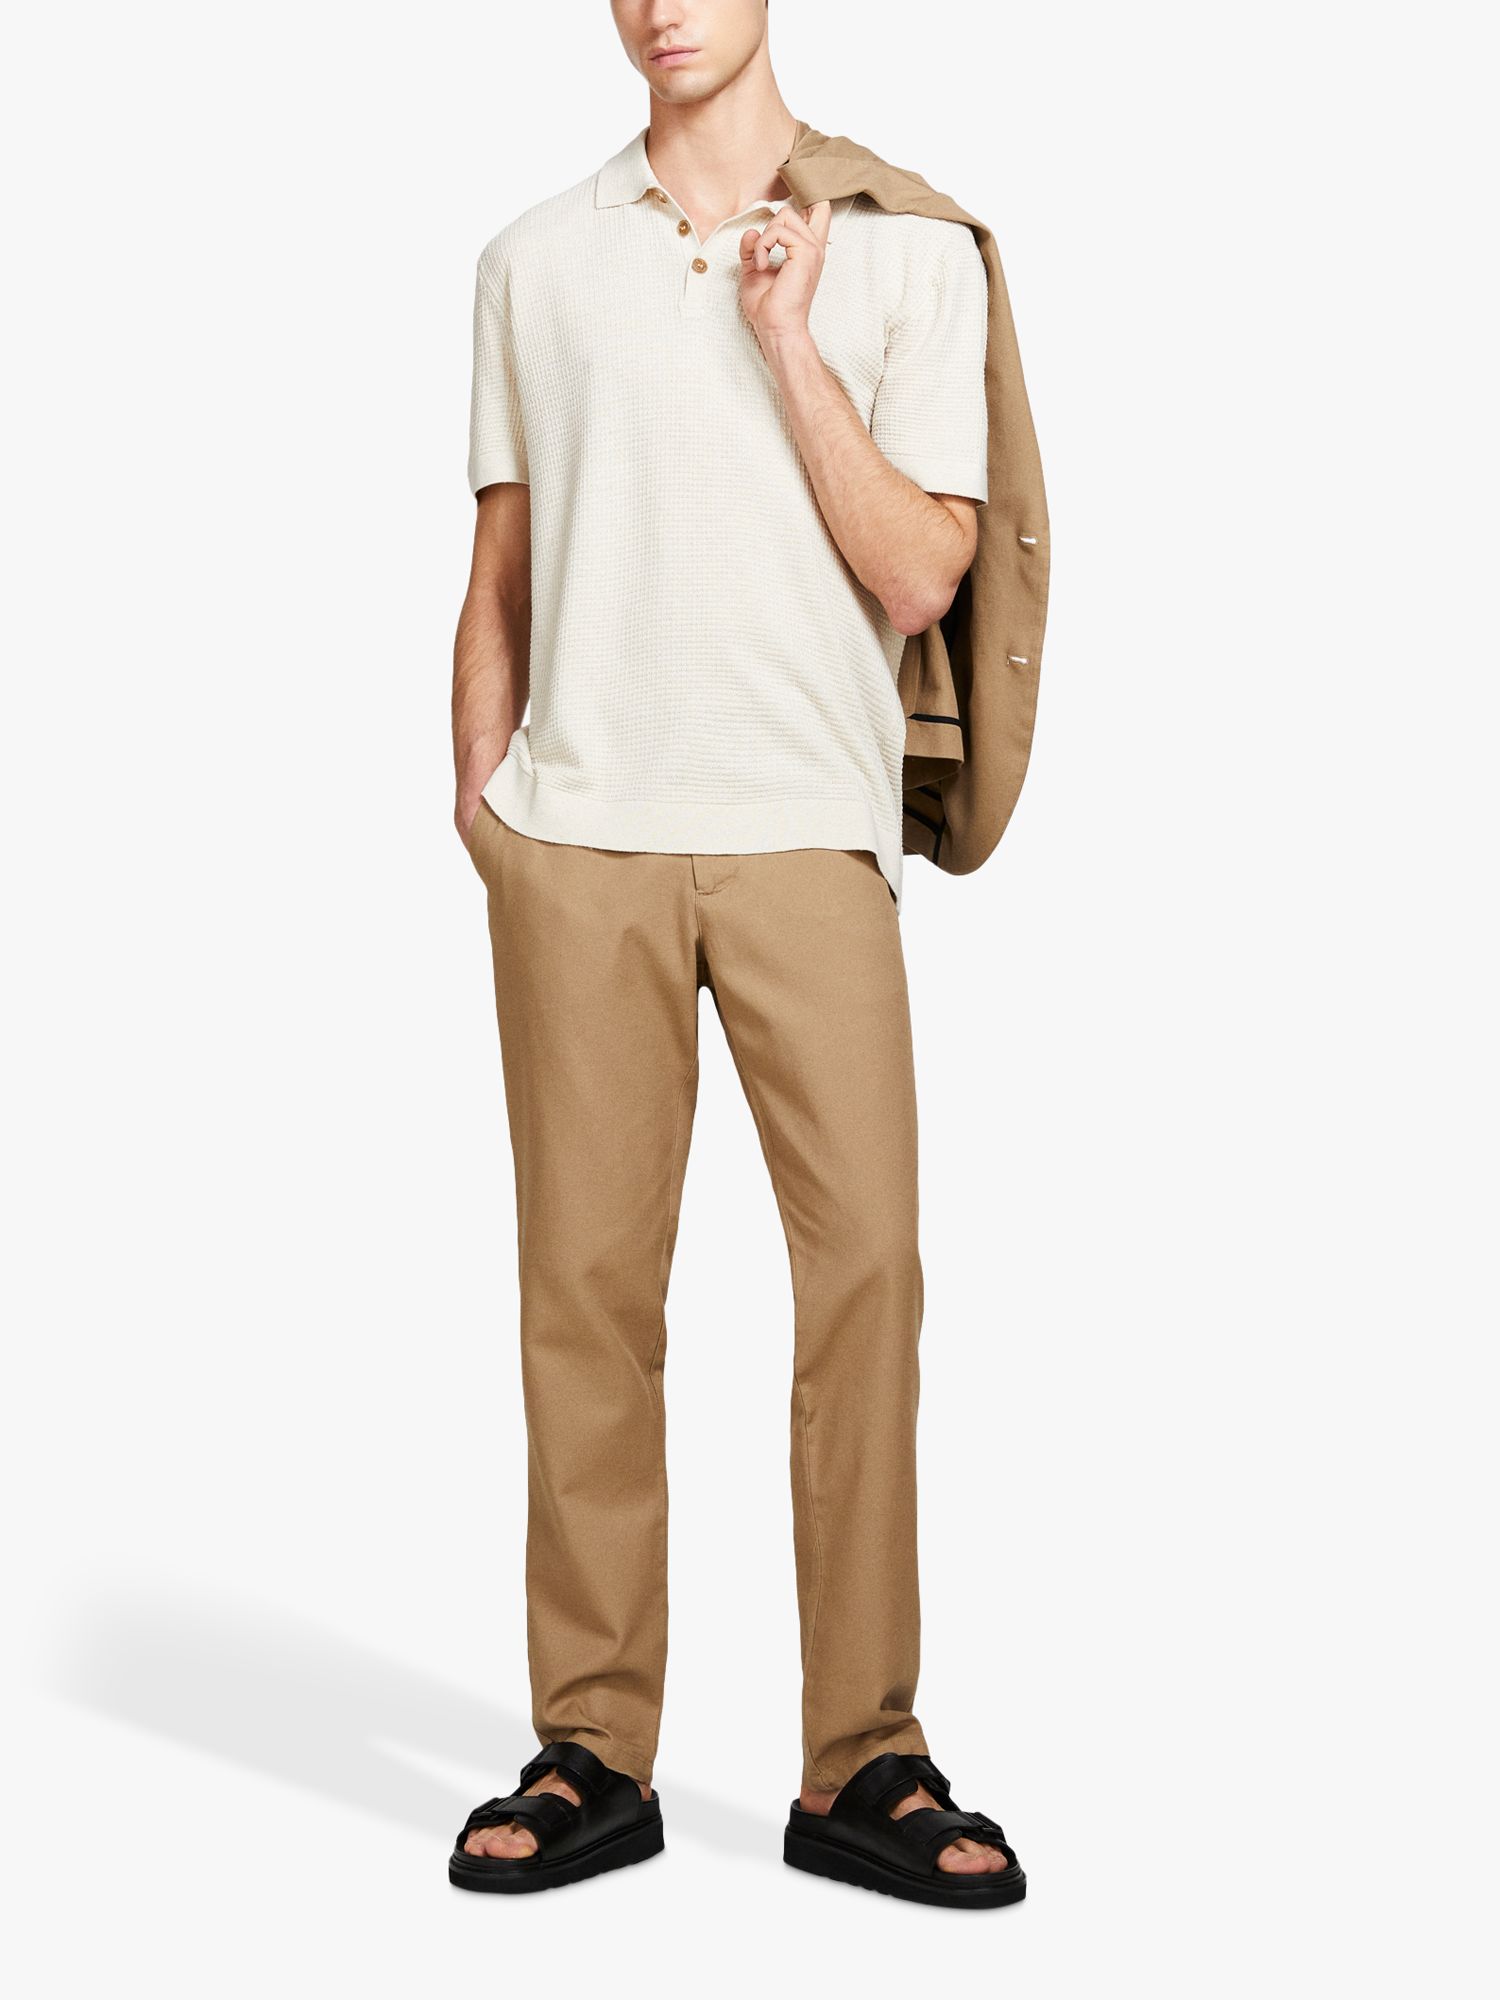 SISLEY Knitted Linen Blend Polo Shirt, White, S